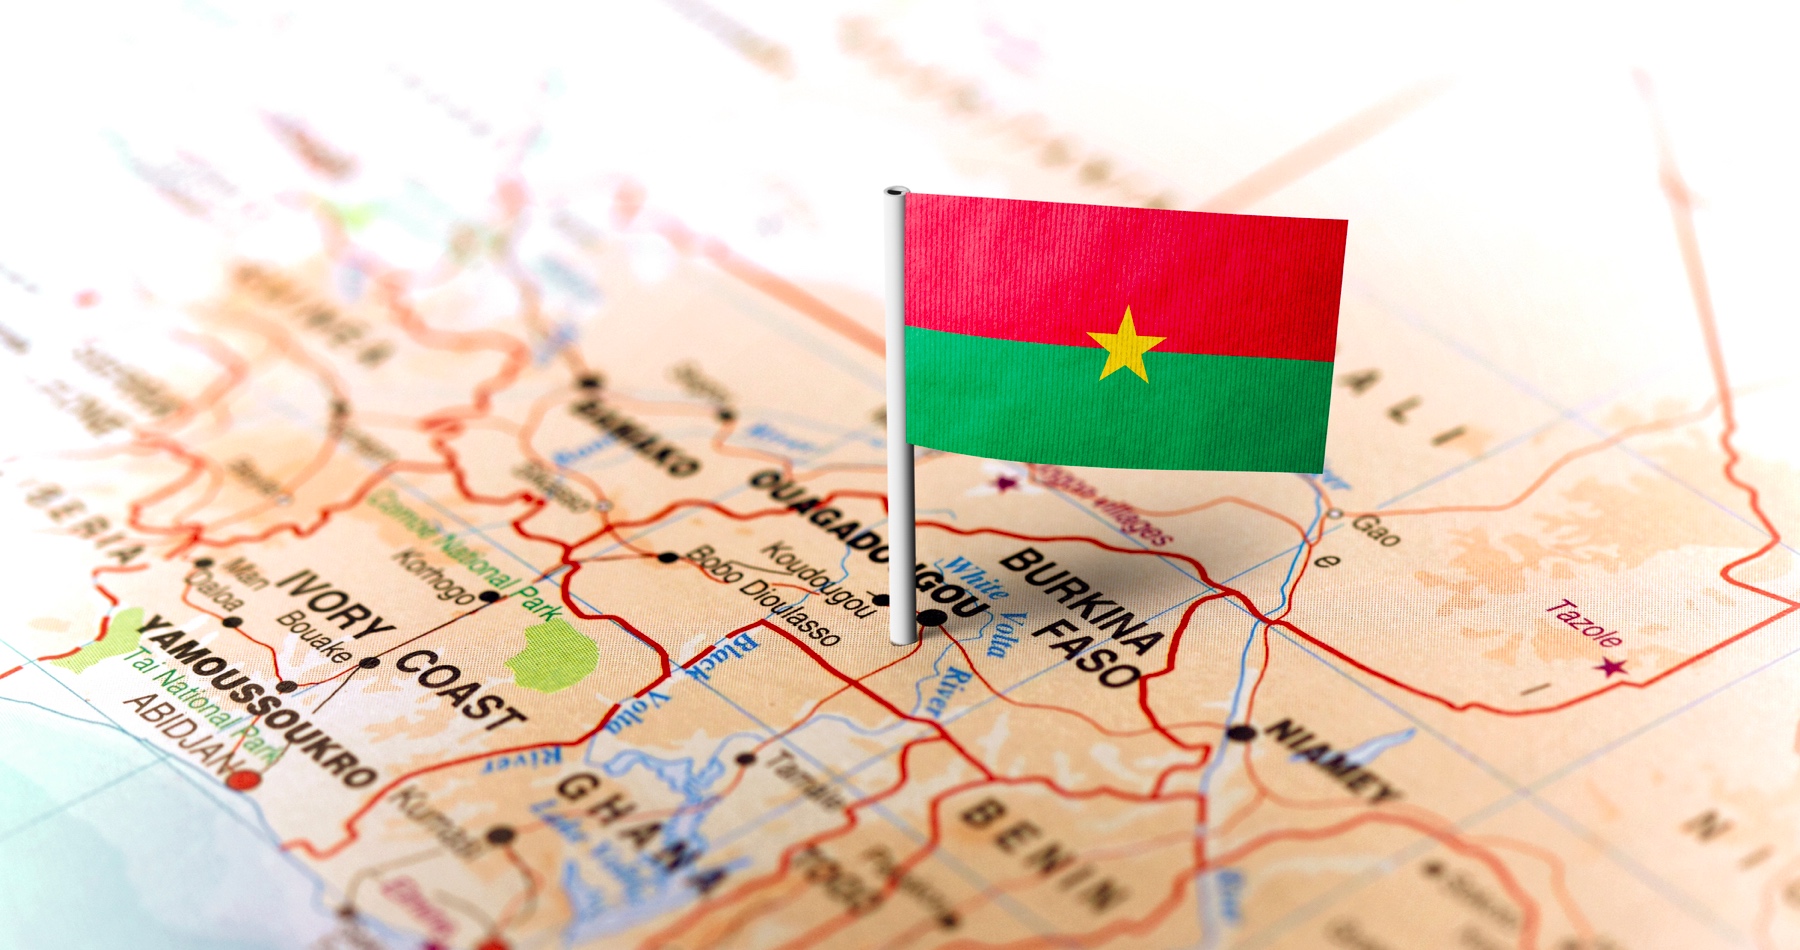 Burkina Faso zakázala vysielanie BBC a Hlasu Ameriky